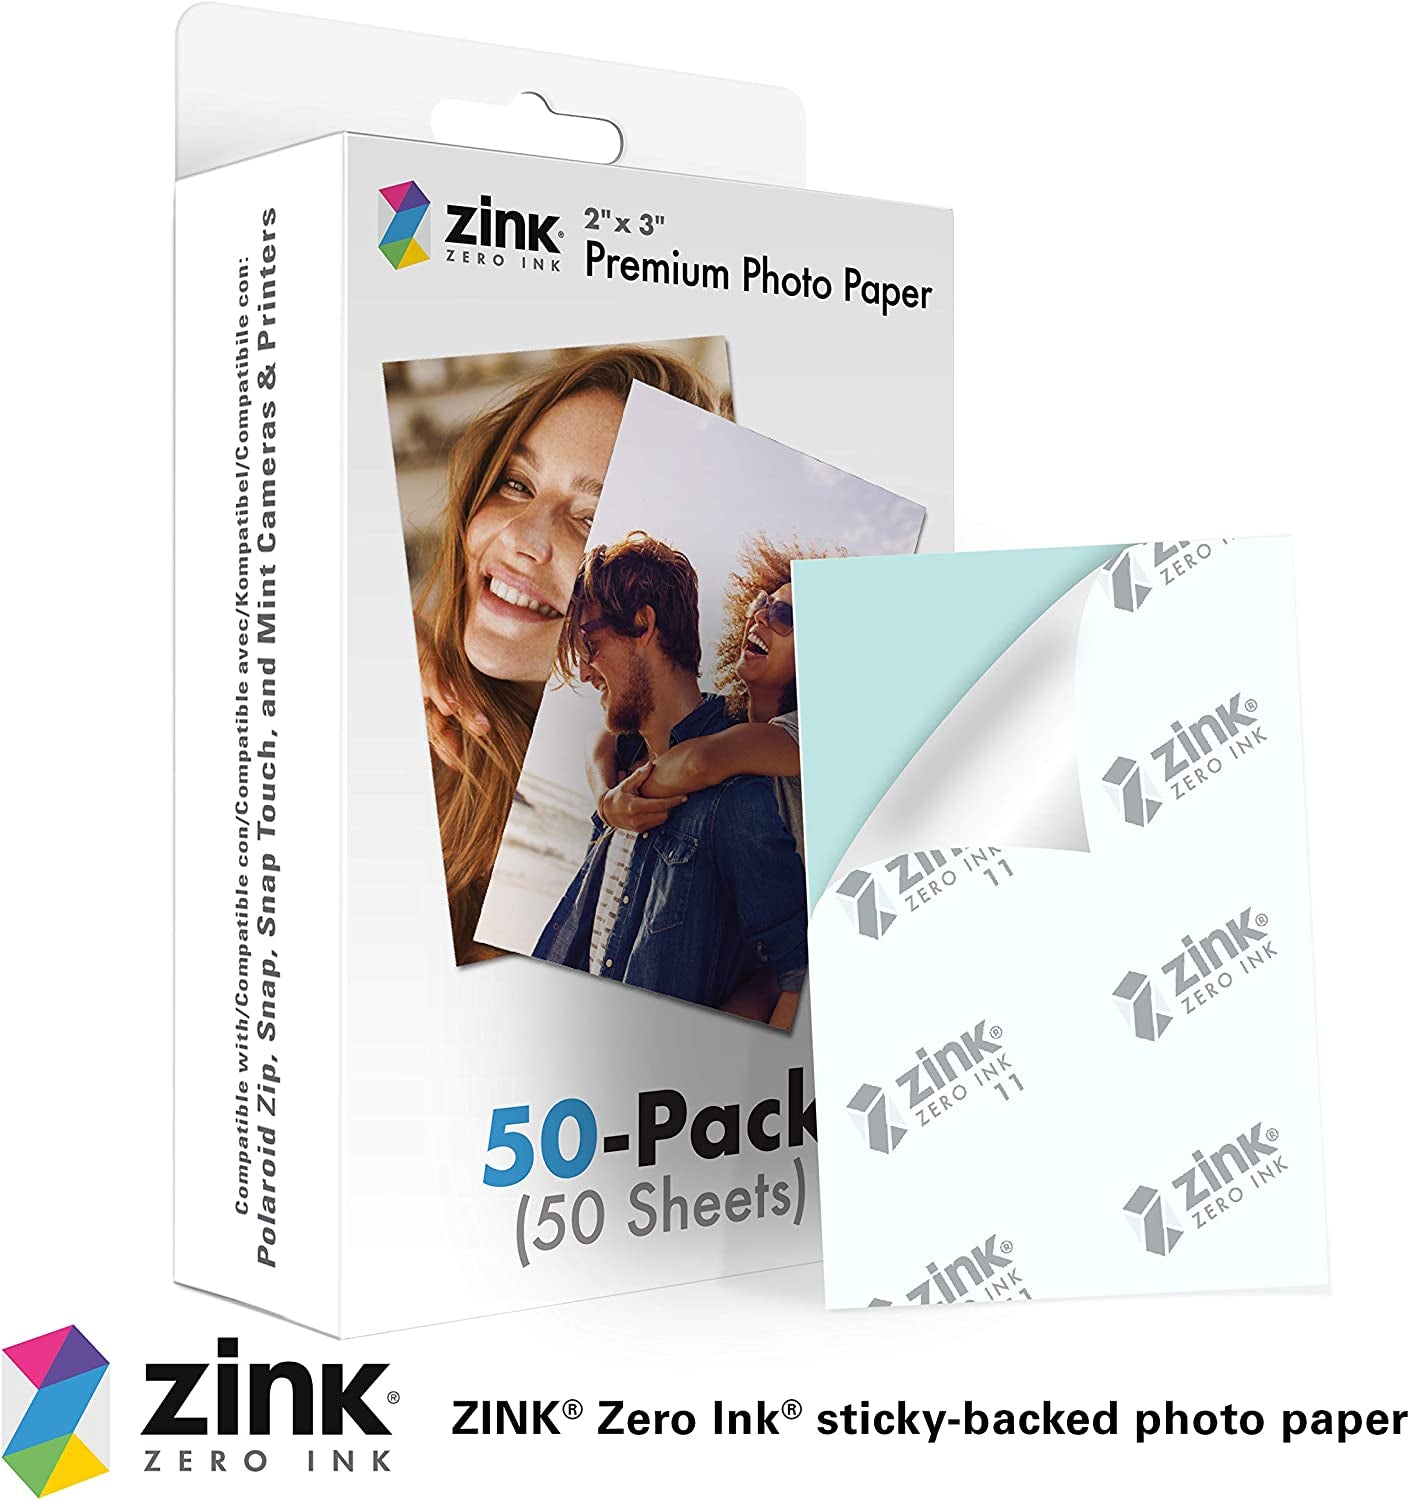 2"X3" Premium Instant Photo Paper (50 Pack)